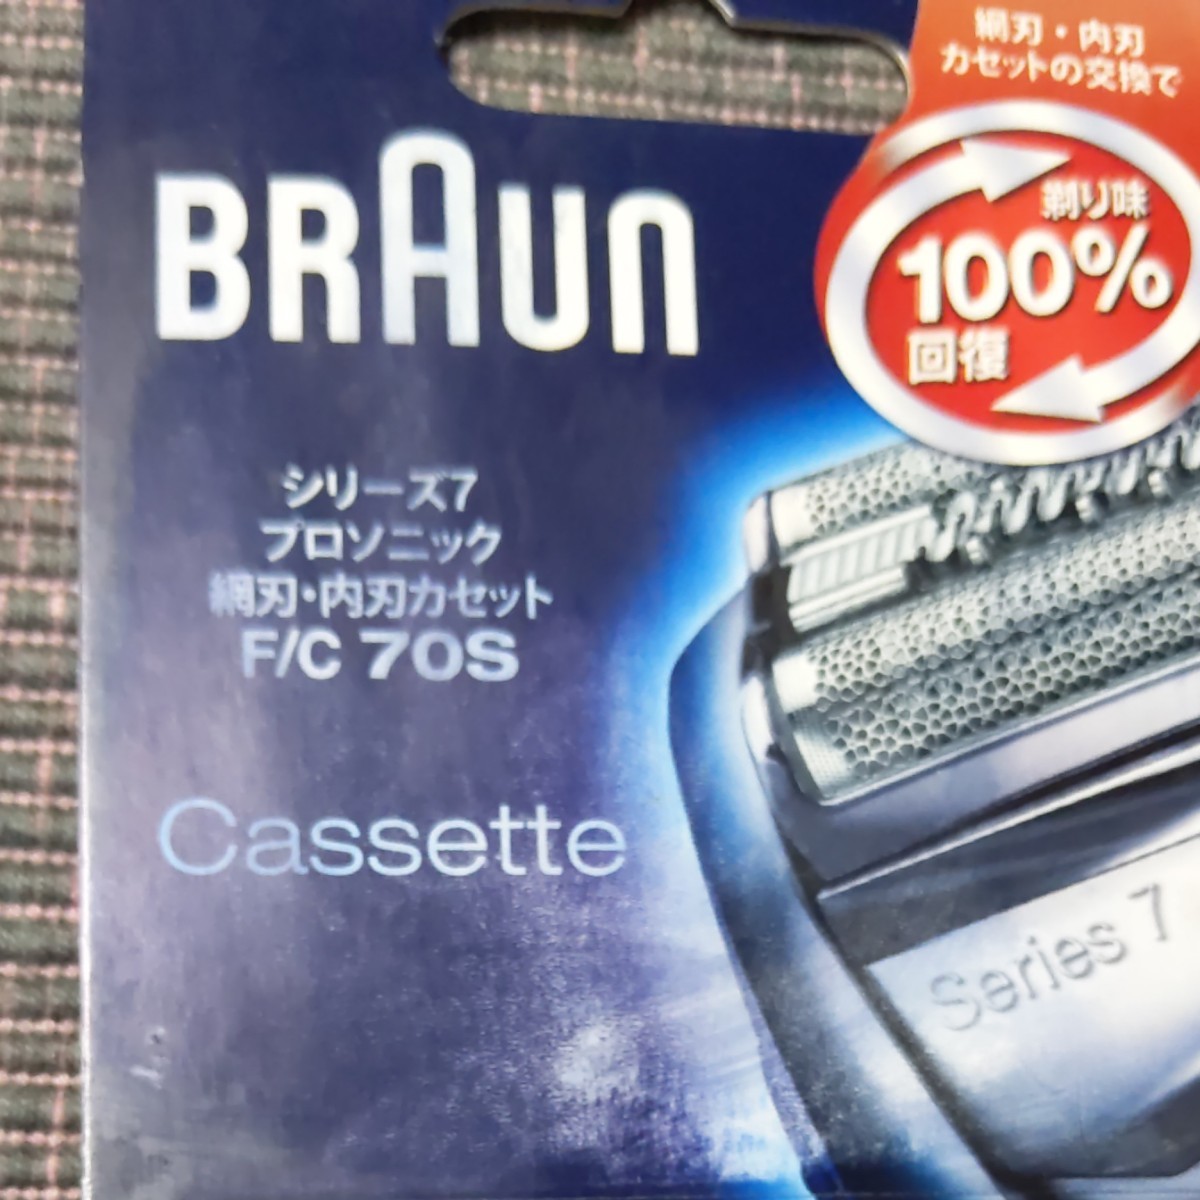 【新品】BRAUN シェーバー替刃セット シリーズ7 網刃・内刃 F/C70S